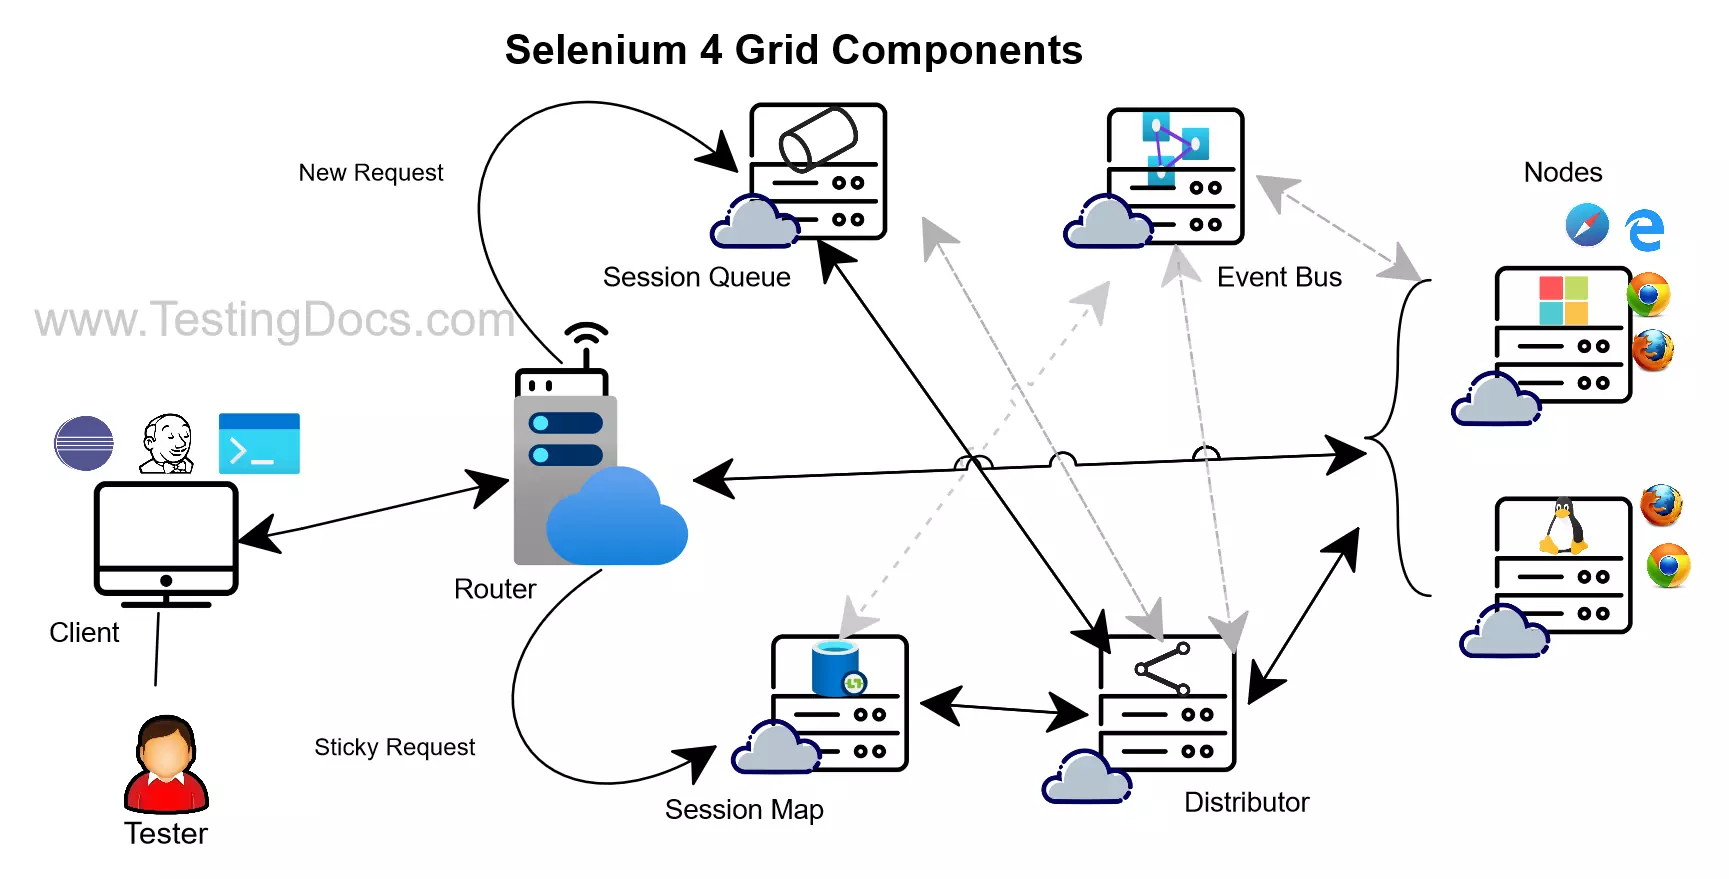 Selenium 4 Grid Components